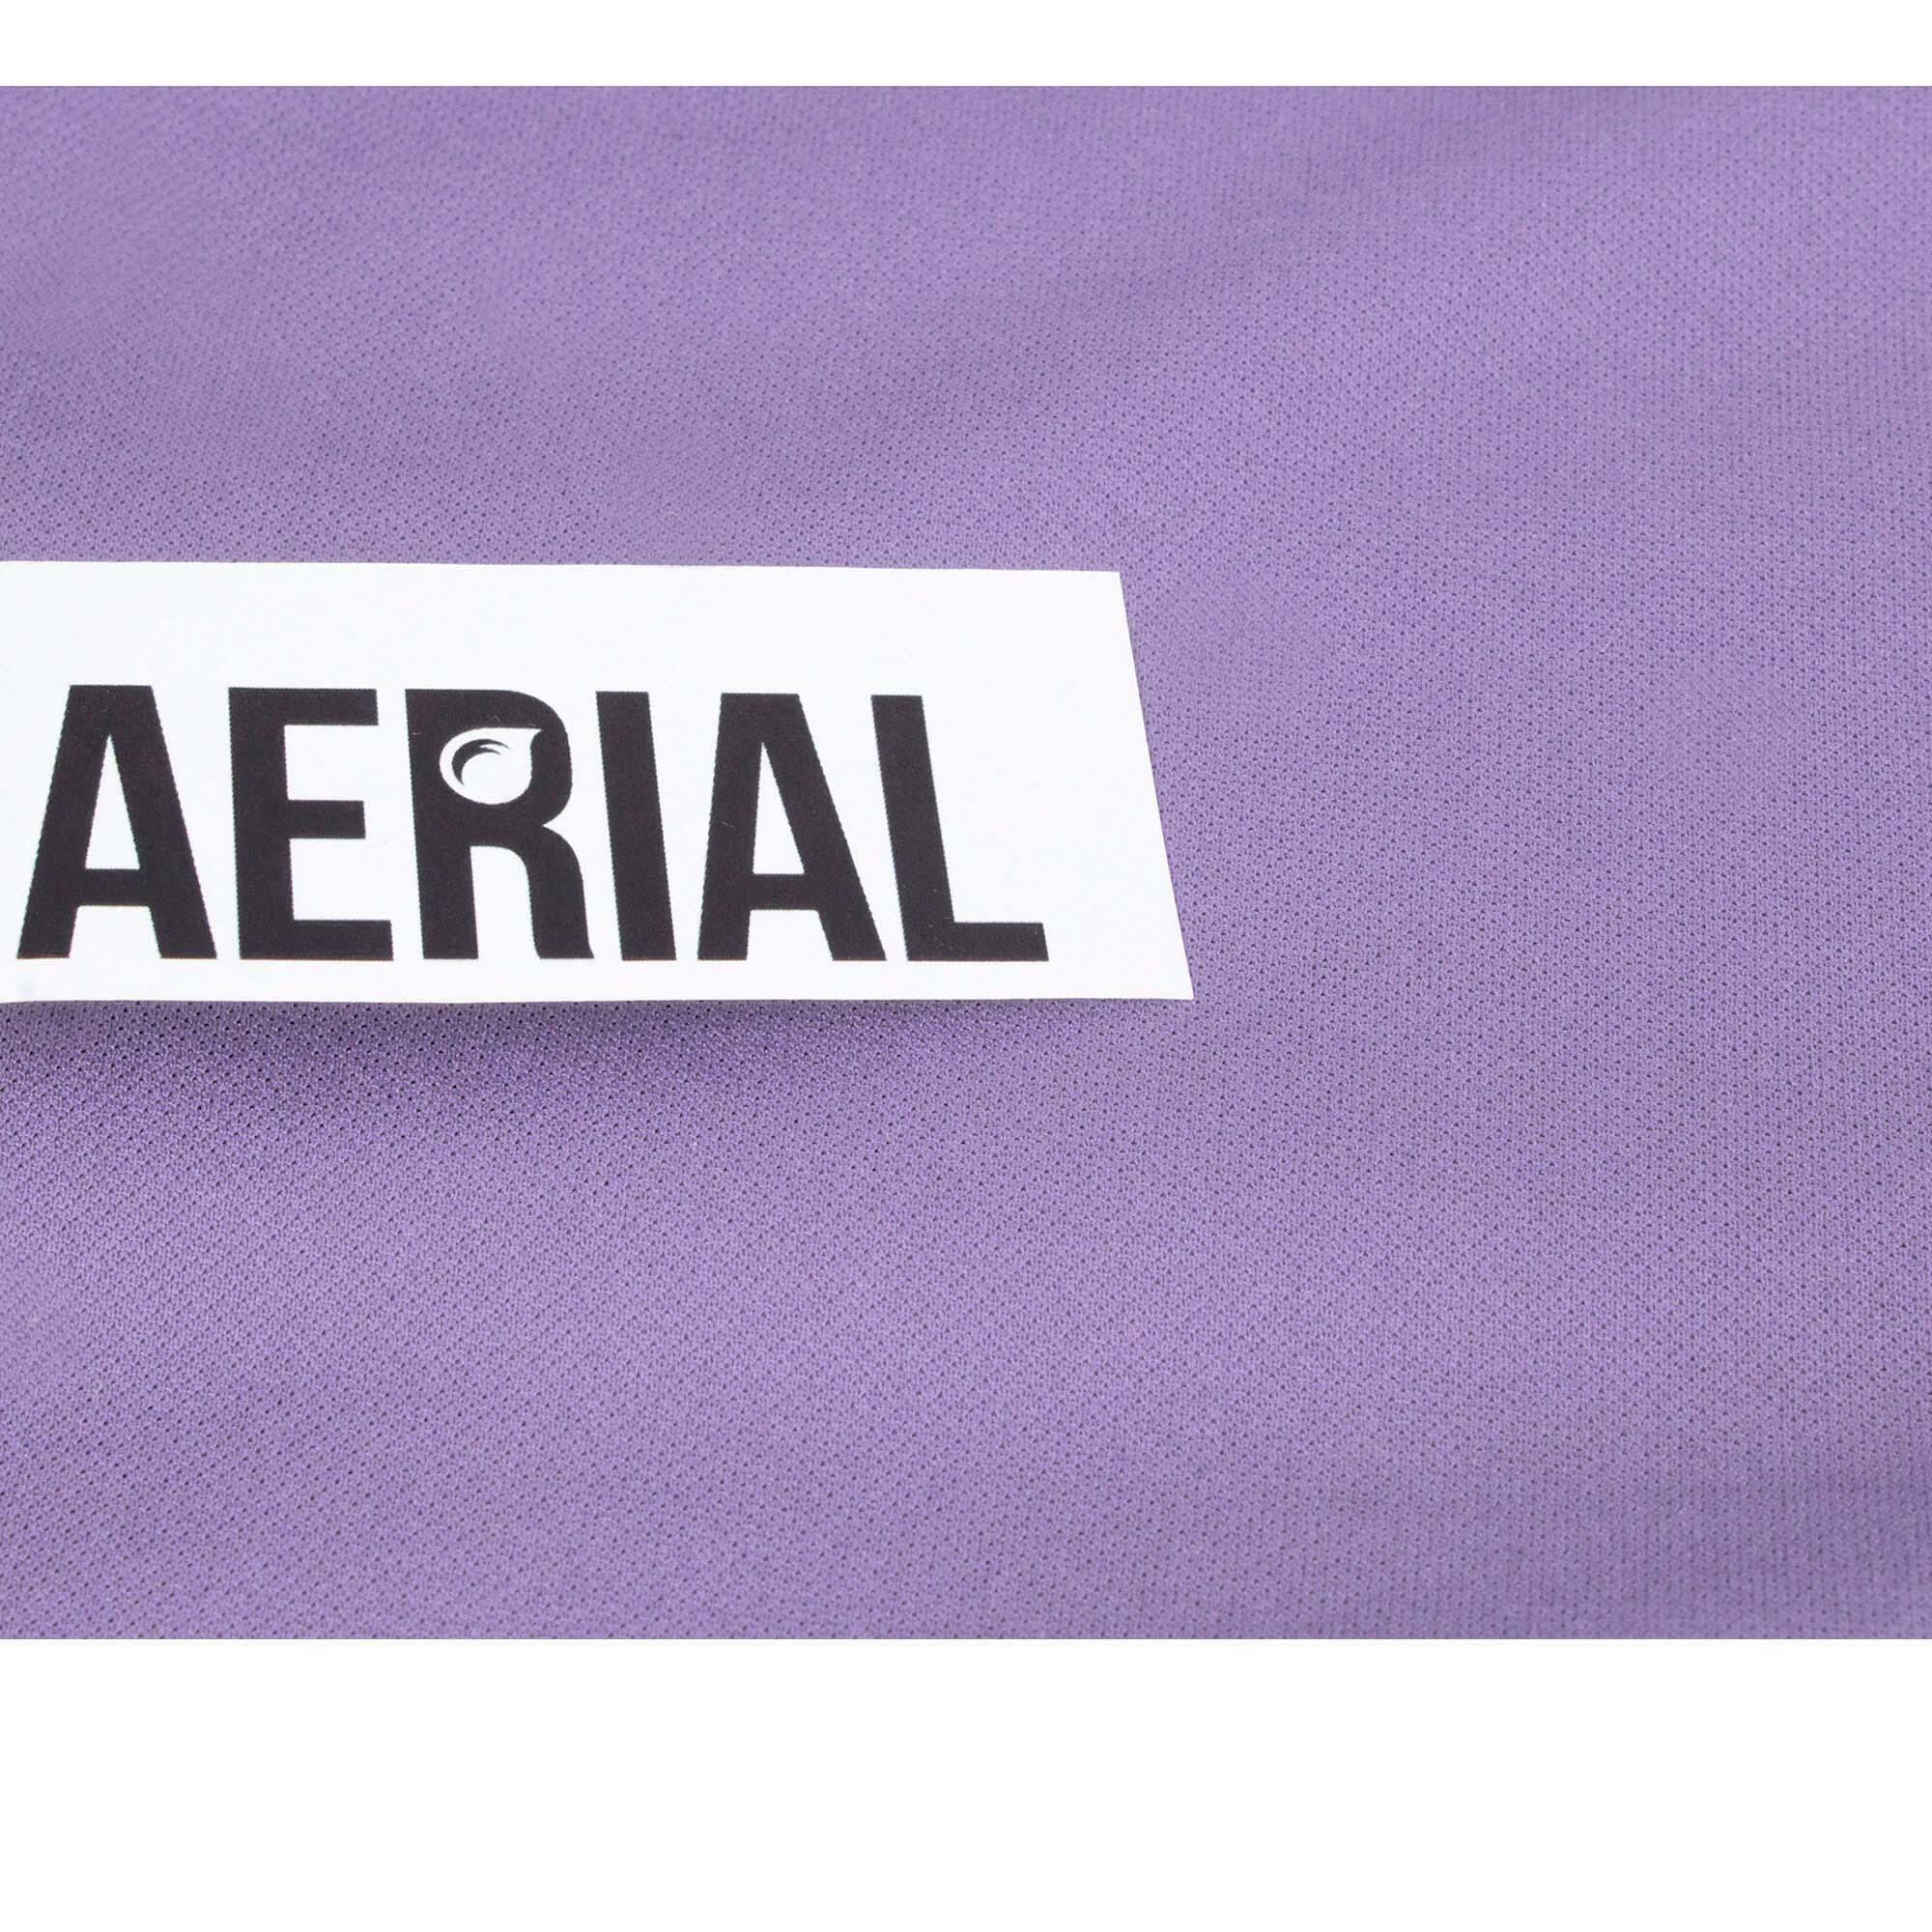 Firetoys Aerial Silk (Aerial Fabric / Tissus) - Lavender 4/5